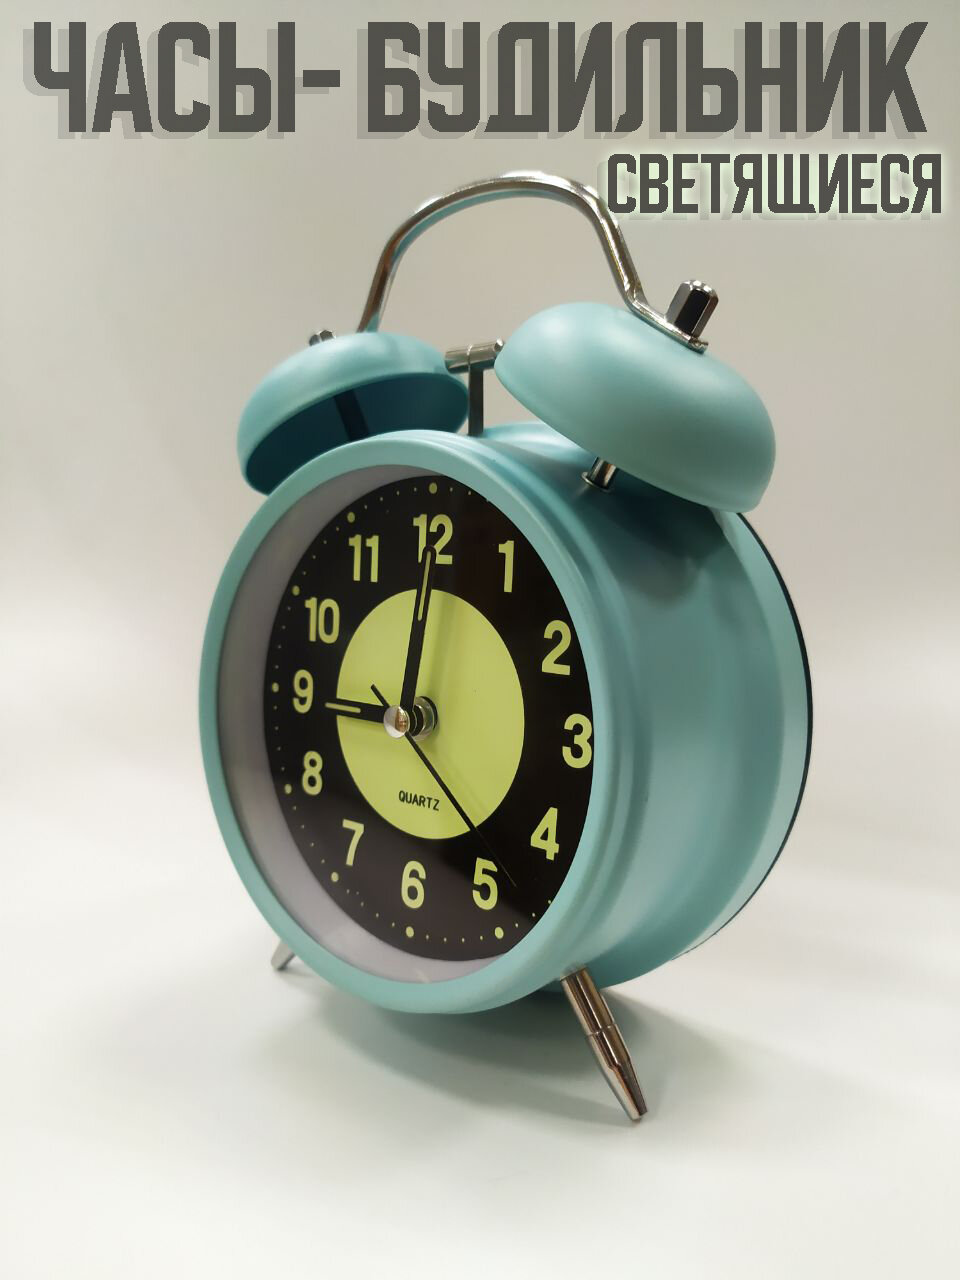 Часы будильник со звонком светящиеся. Цвет: голубой